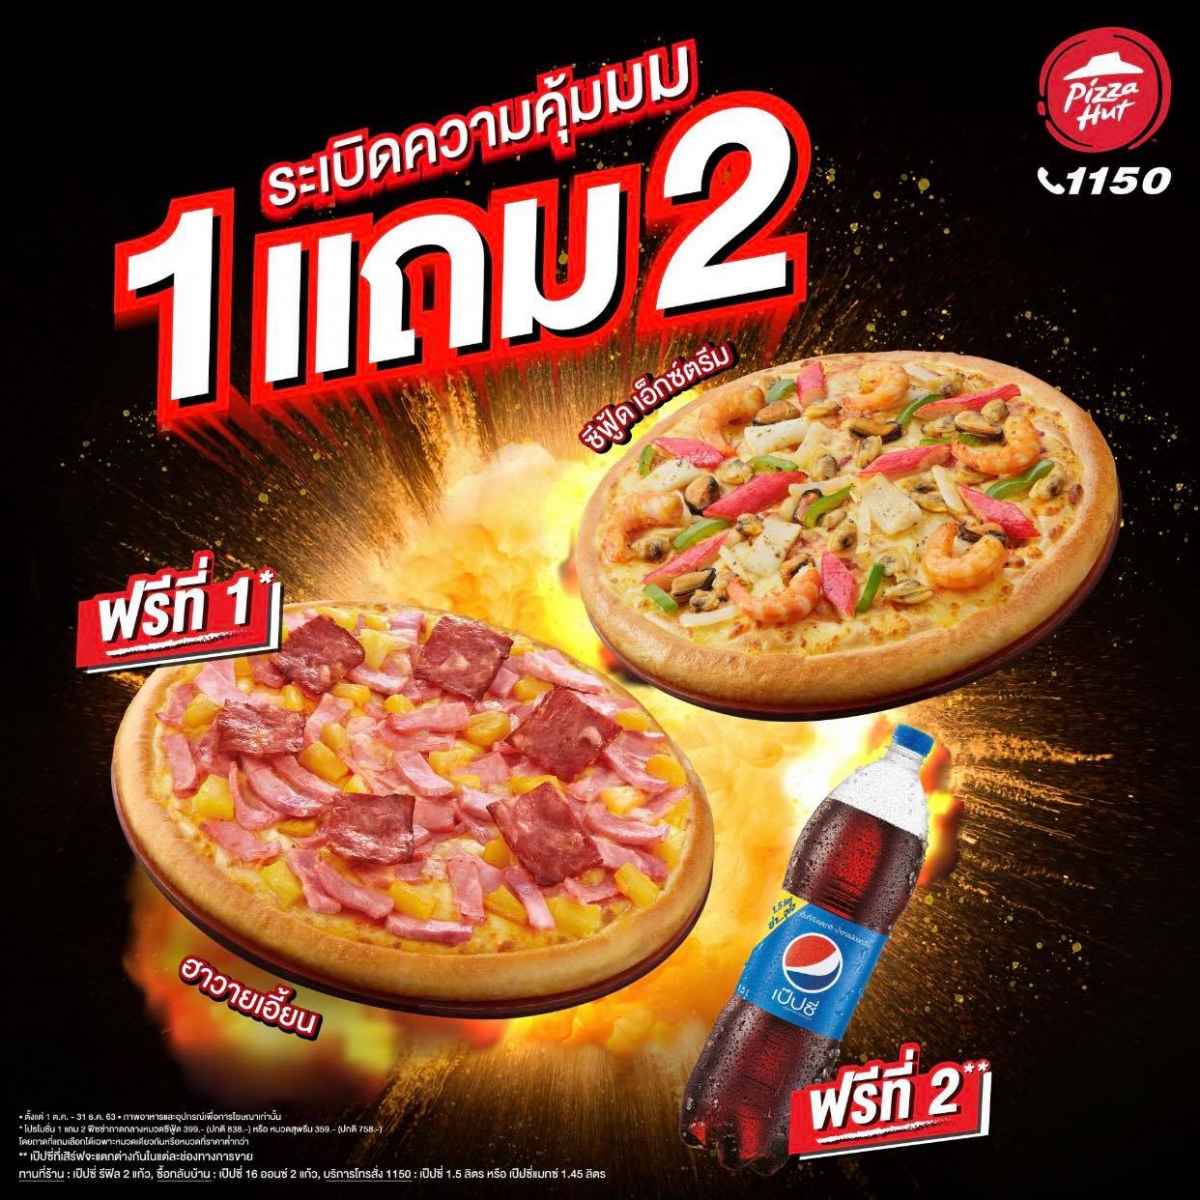 pizzahut 1 free 1